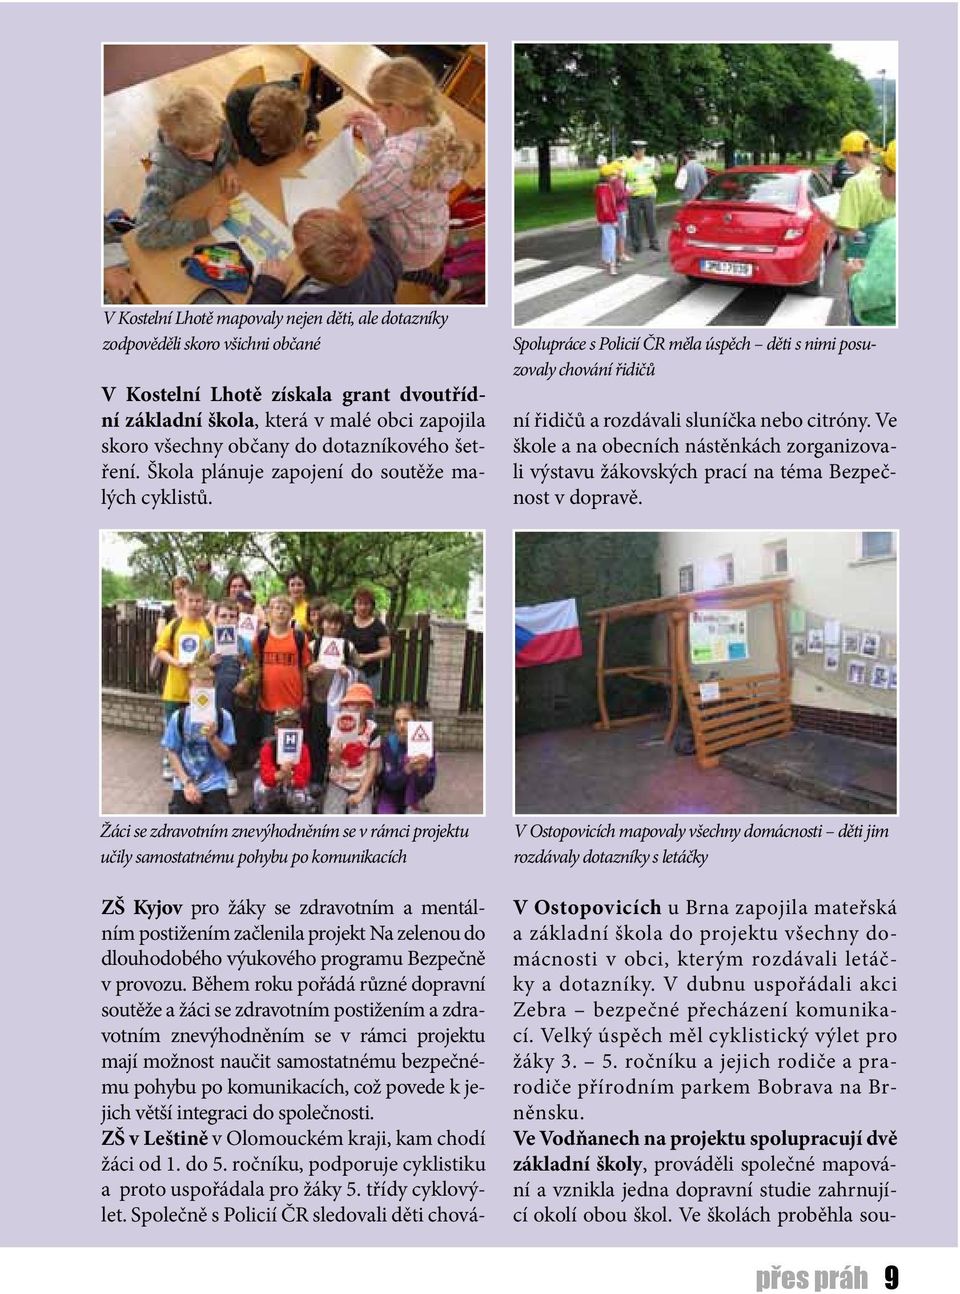 Spolupráce s Policií ČR měla úspěch děti s nimi posuzovaly chování řidičů ZŠ Kyjov pro žáky se zdravotním a mentálním postižením začlenila projekt Na zelenou do dlouhodobého výukového programu